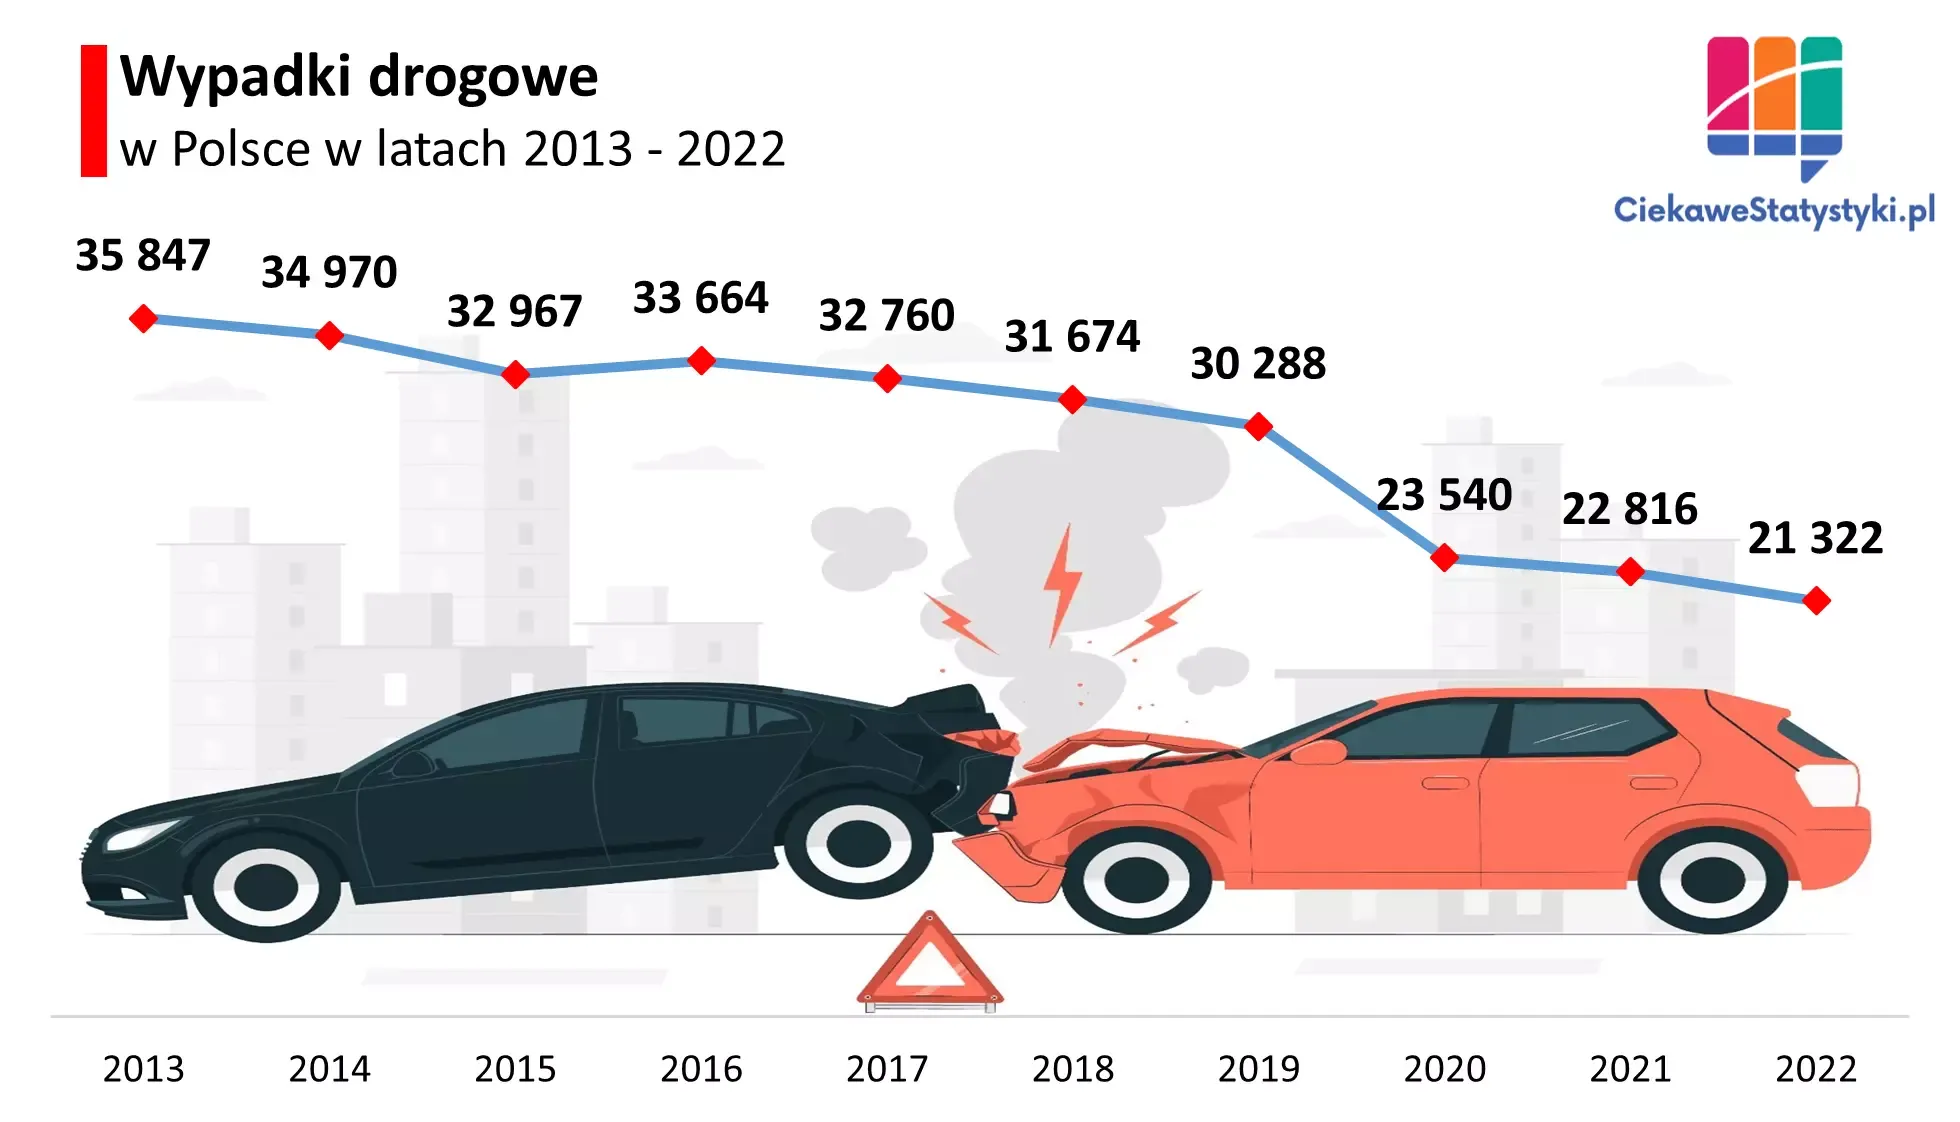 Wykres przedstawia ile wypadków drogowych jest w Polsce